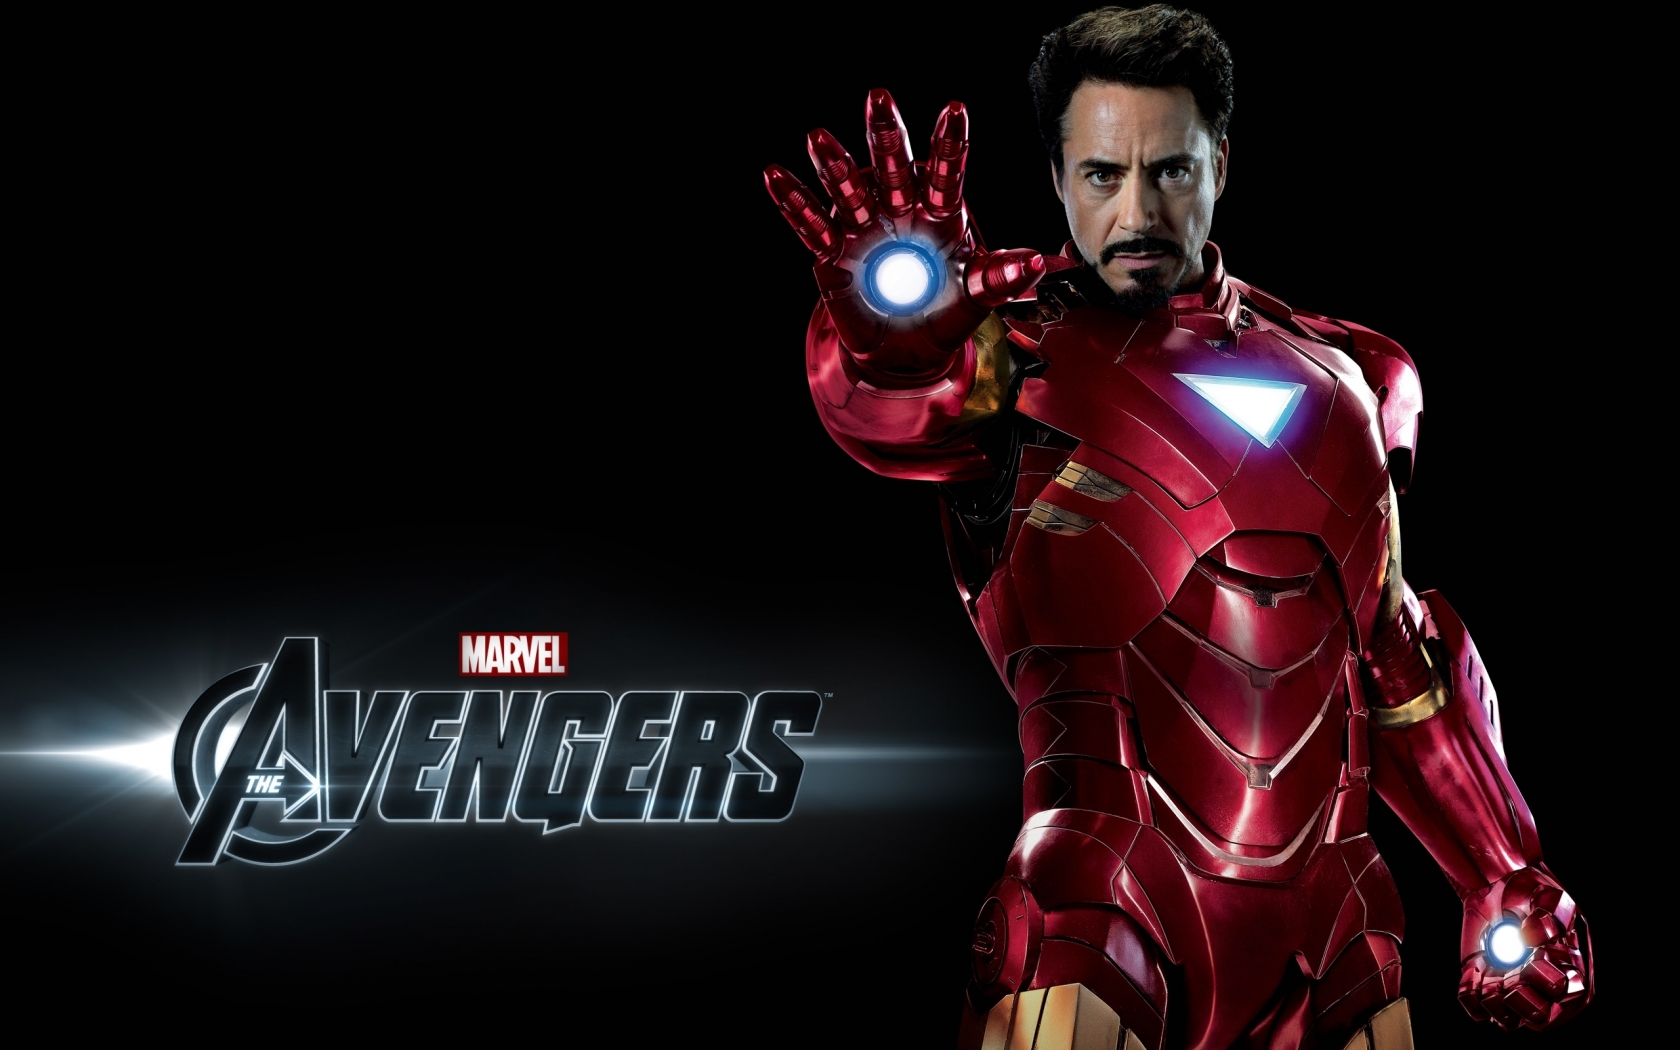 Avengers Iron Man for 1680 x 1050 widescreen resolution